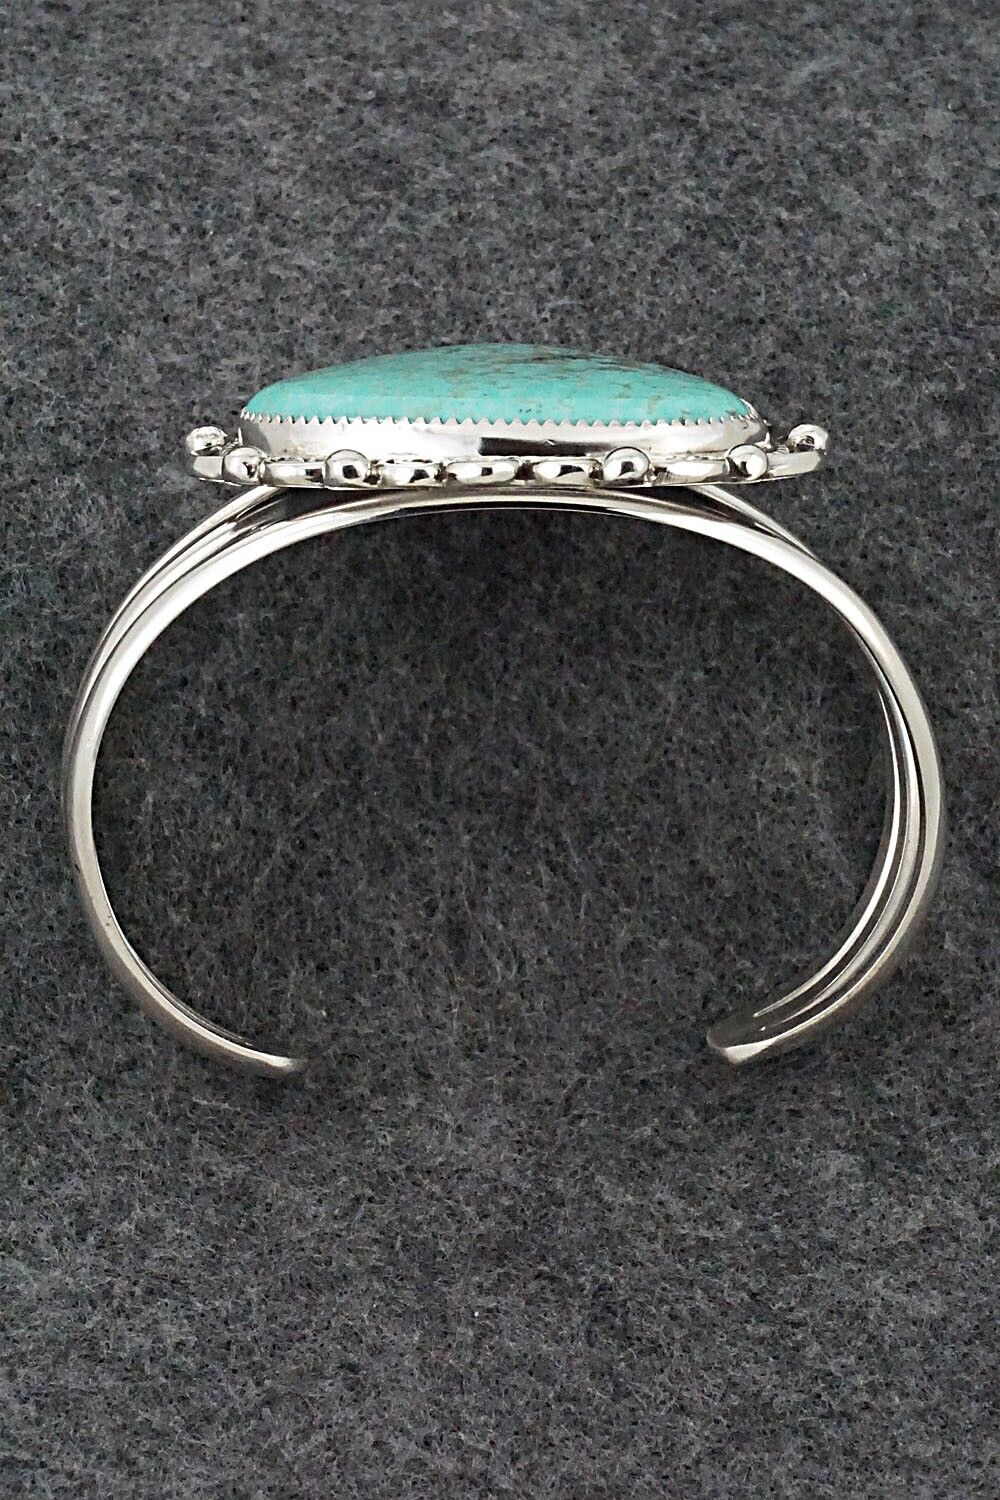 Turquoise & Sterling Silver Bracelet - Leslie Nez